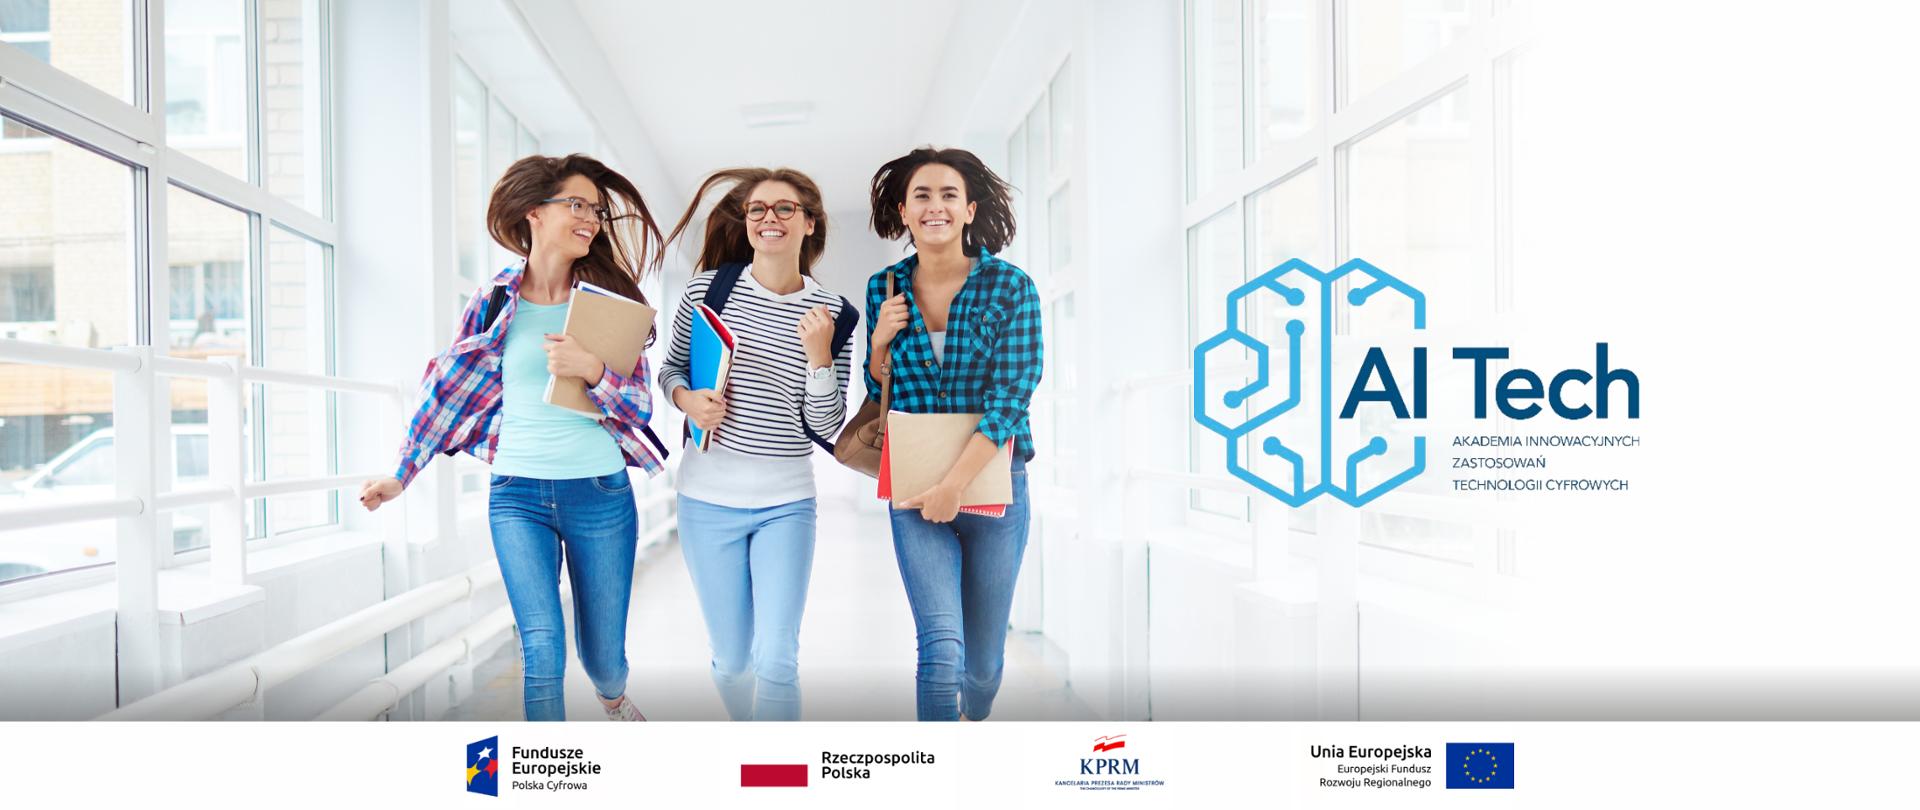 Trzy młode uśmiechnięte dziewczyny (studentki) idą szybko korytarzem. Każda z nich trzyma w rękach zeszyty z notatkami. Z prawej strony logo AI Tech - Akademia Innowacyjnych Zastosowań Technologii Cyfrowych.